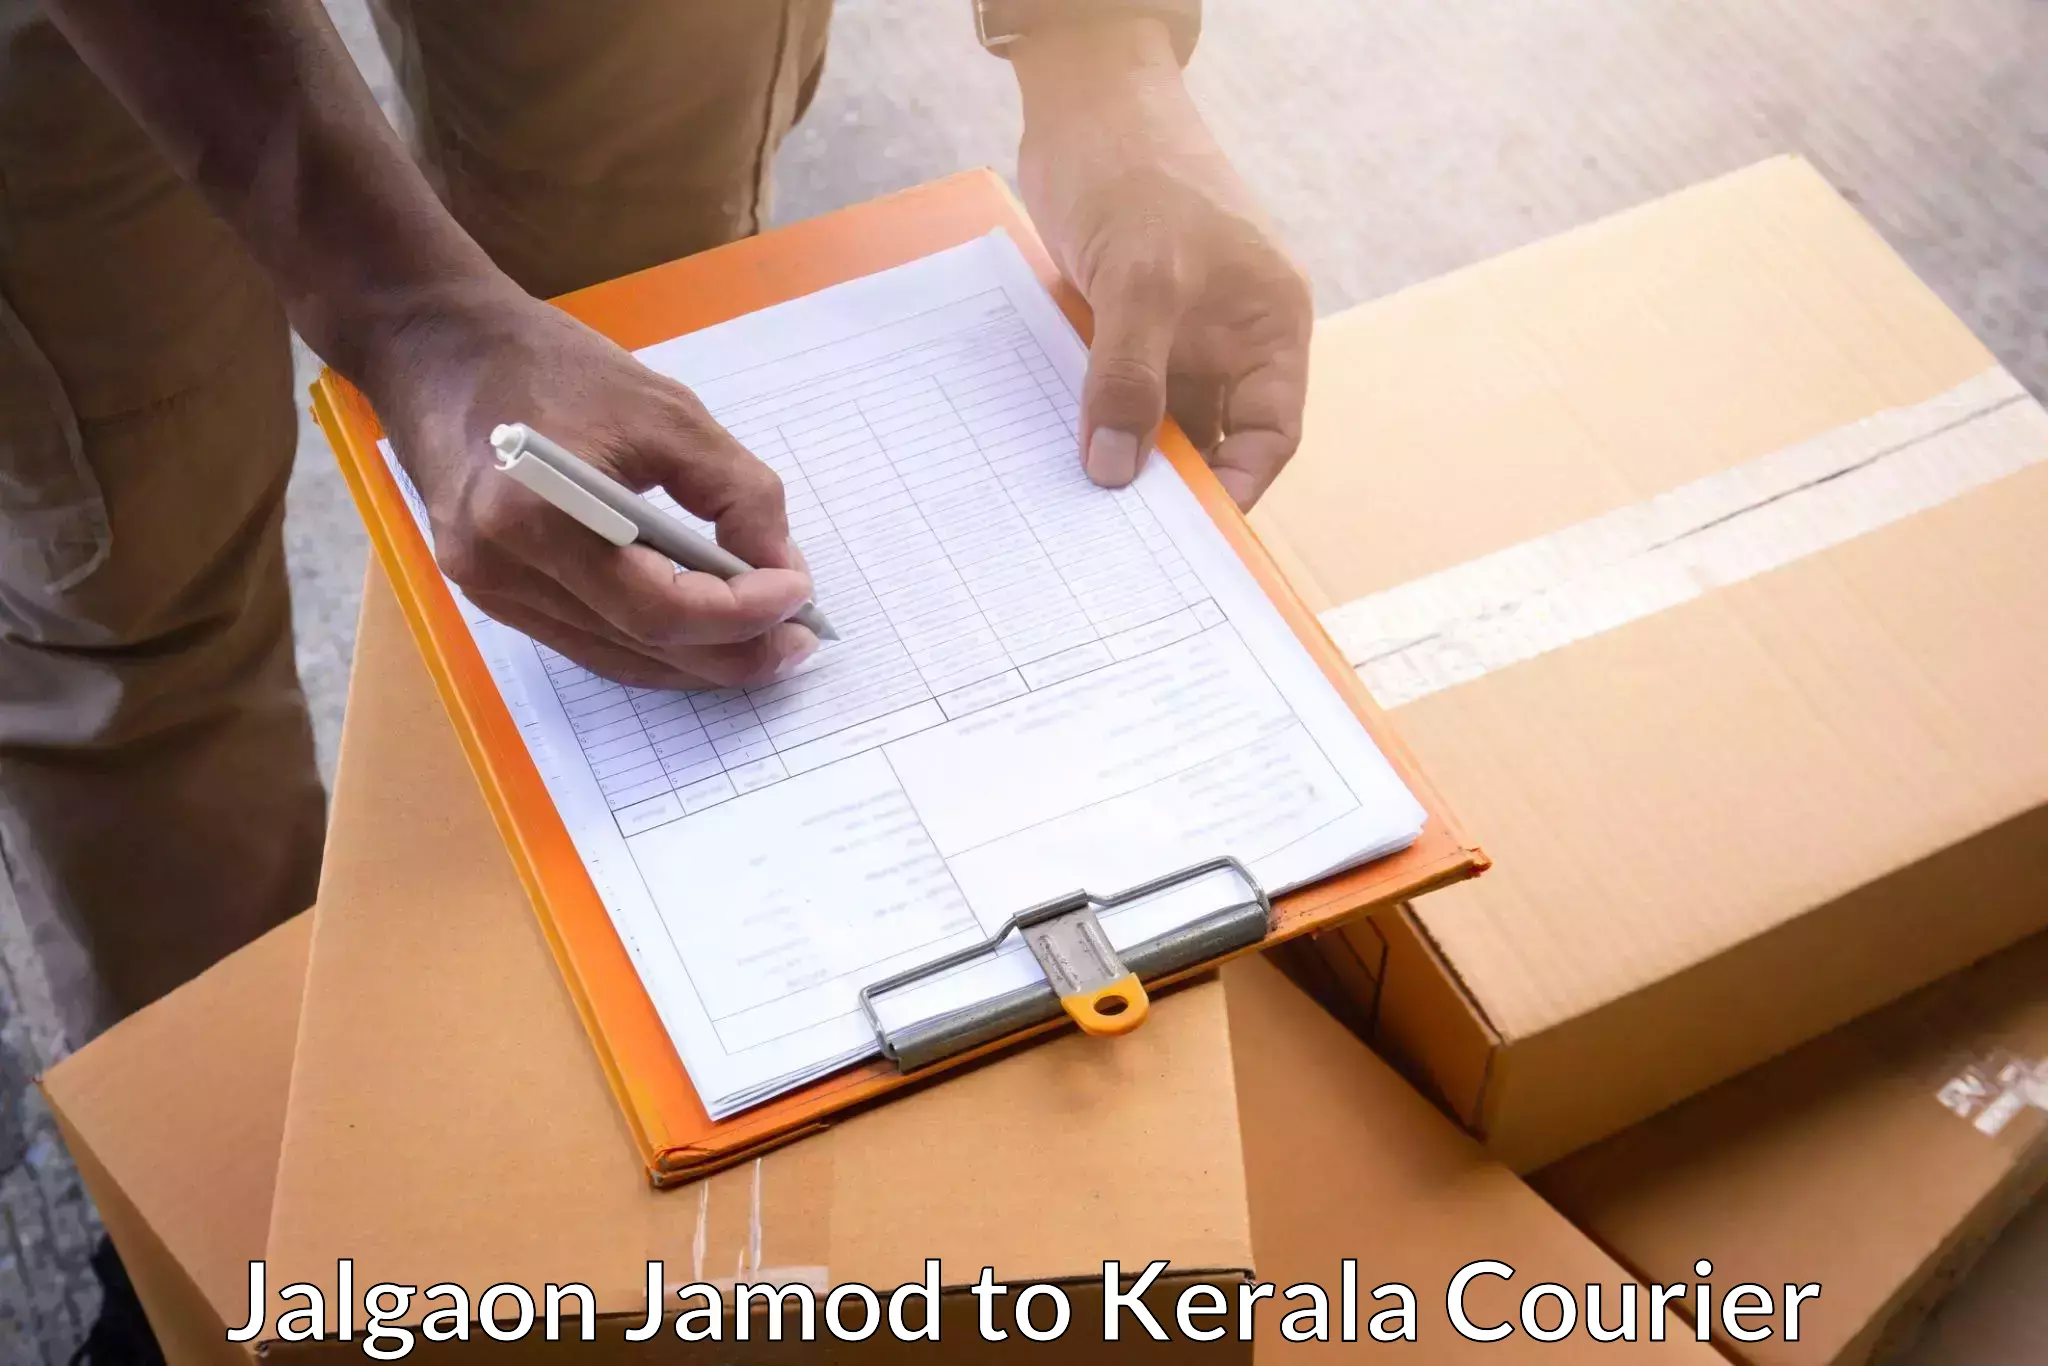 Modern courier technology Jalgaon Jamod to Kuthumkal